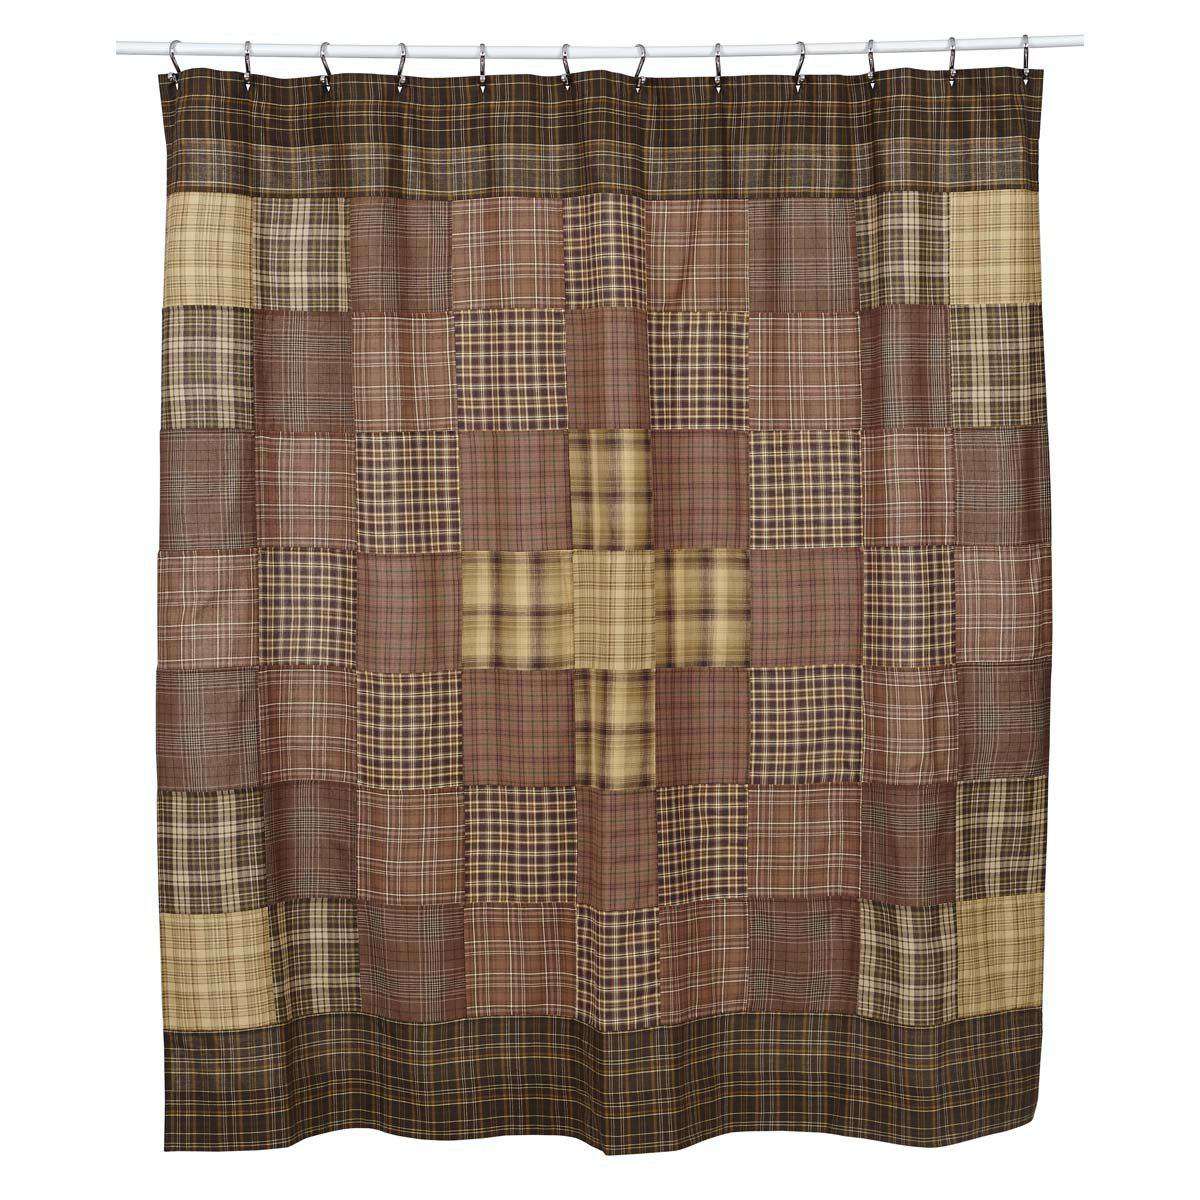 Prescott Shower Curtain Unlined 72"x72" curtain VHC Brands 